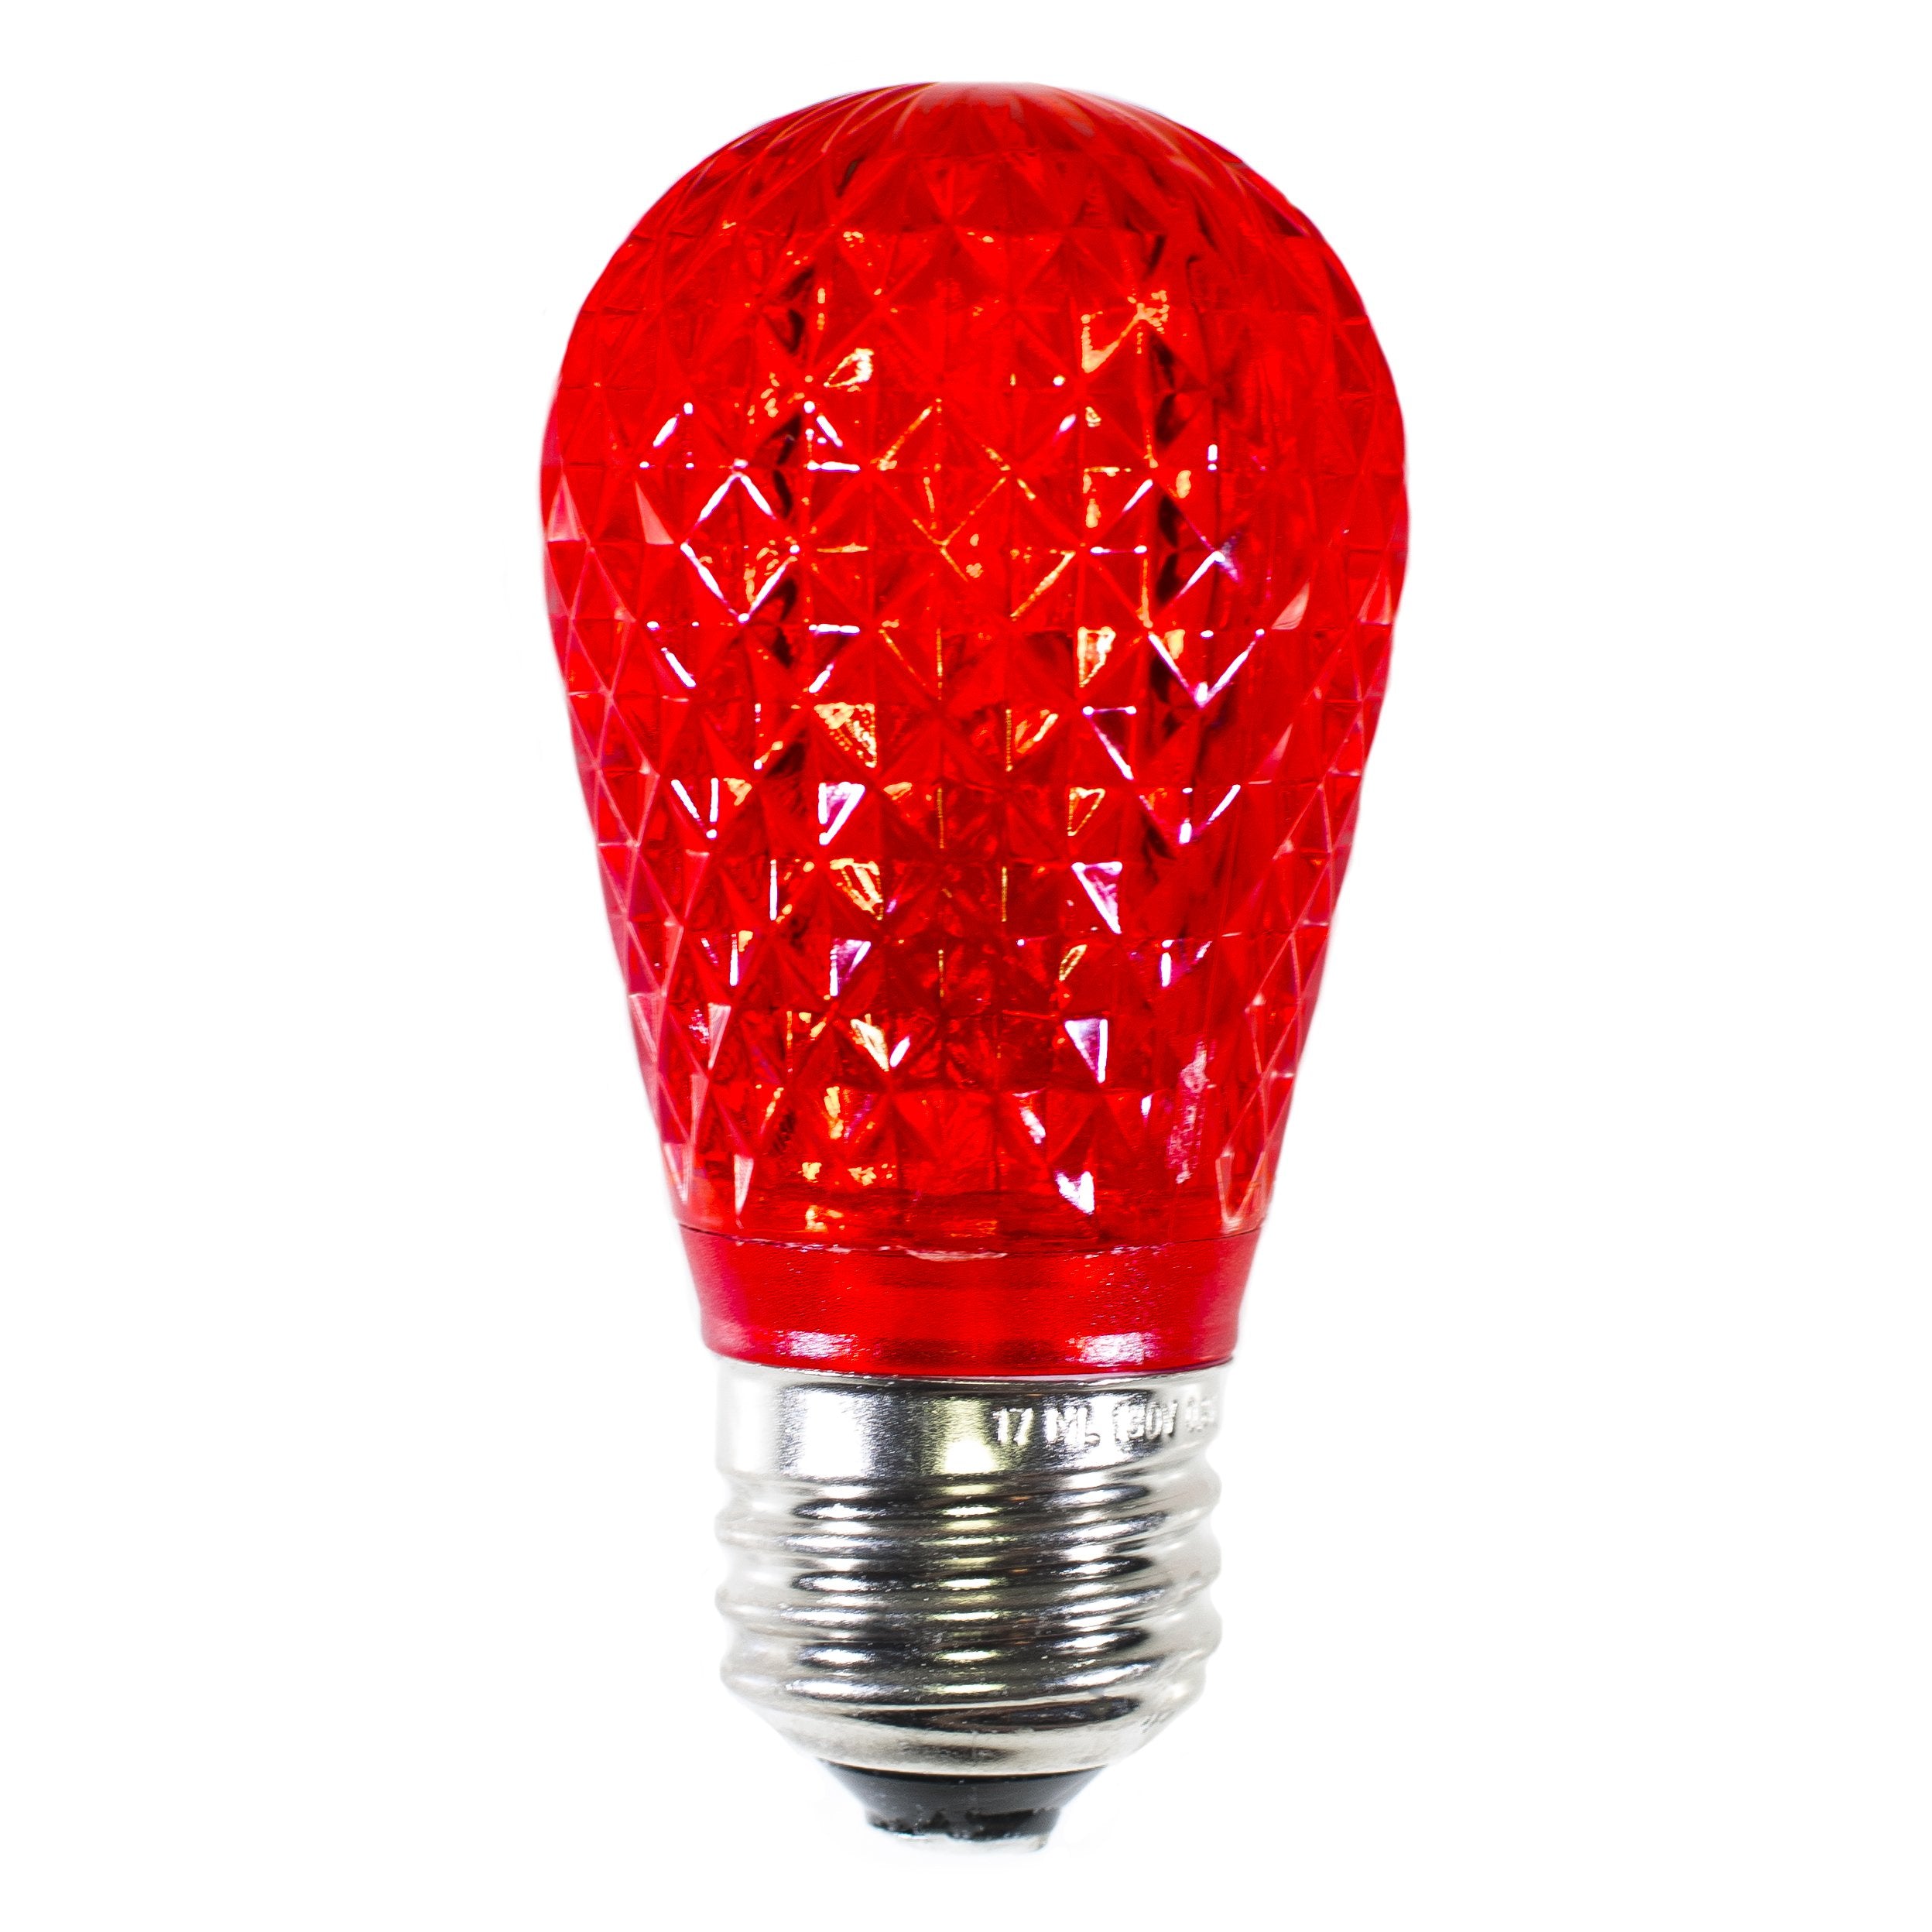 S14 LED Festive Bulbs · Faceted - HLO Lighting